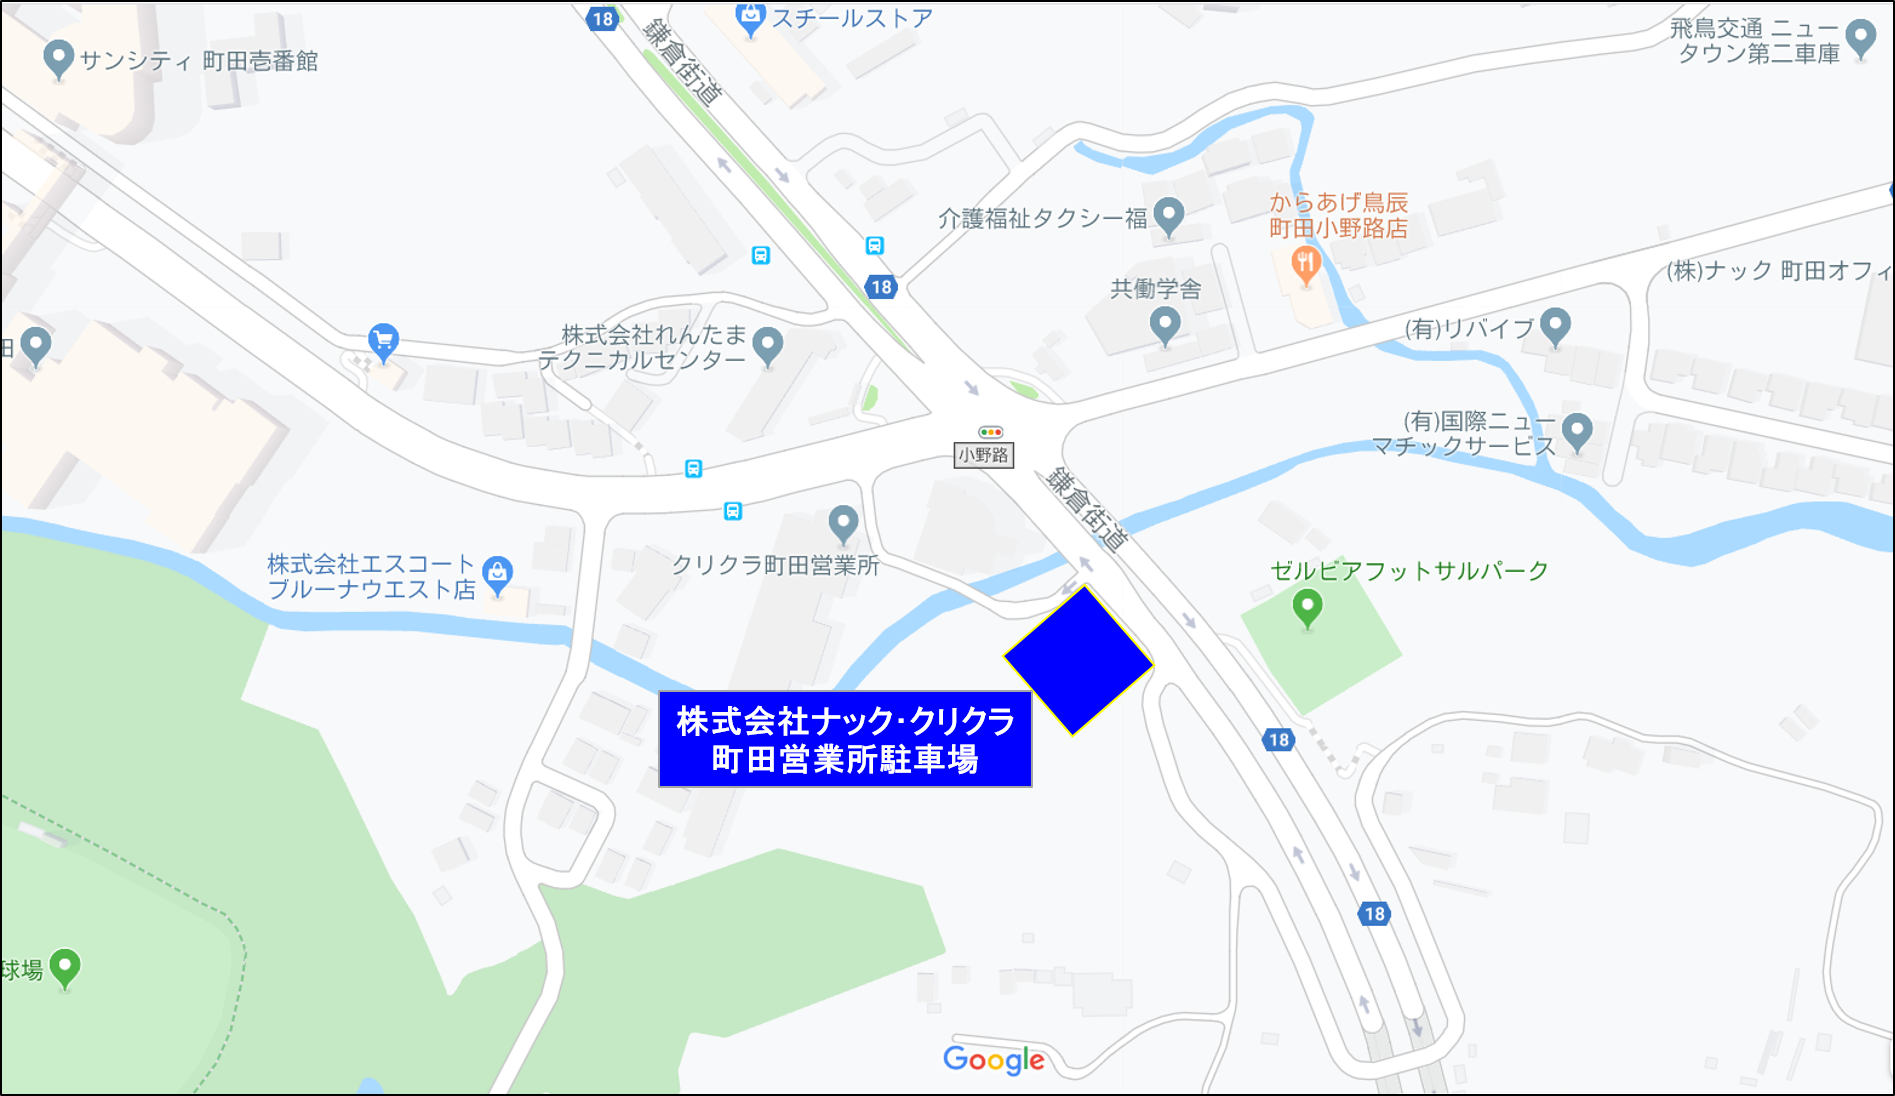 アクセス Fc町田ゼルビア オフィシャルサイト